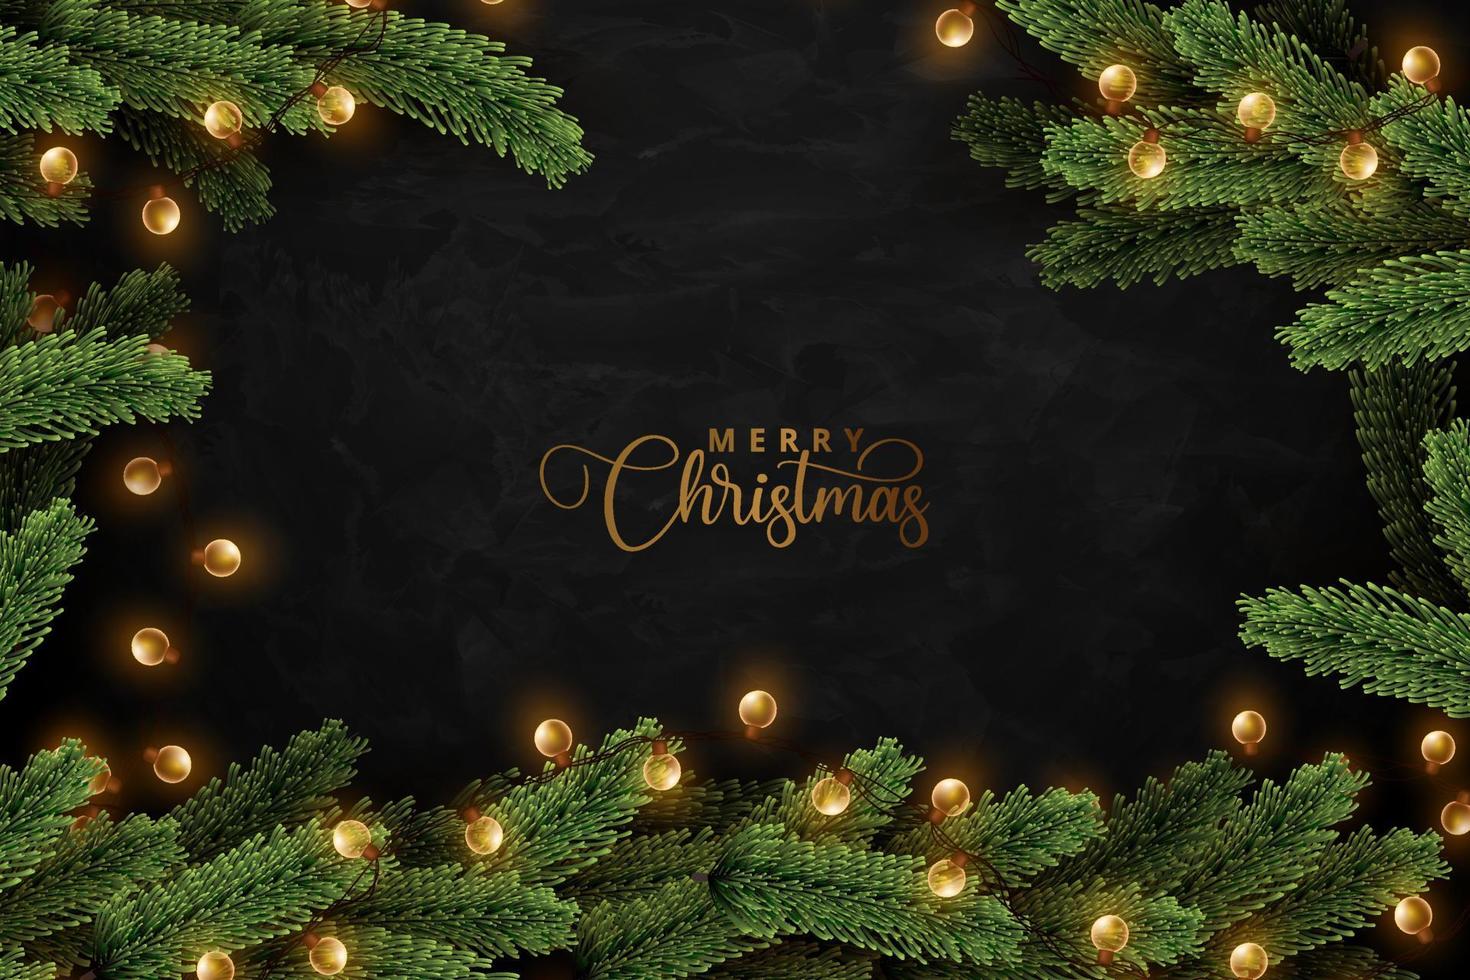 brillantes luces navideñas envueltas en hojas de pino realistas sobre fondo negro oscuro grunge. diseño de concepto de feliz navidad. vector